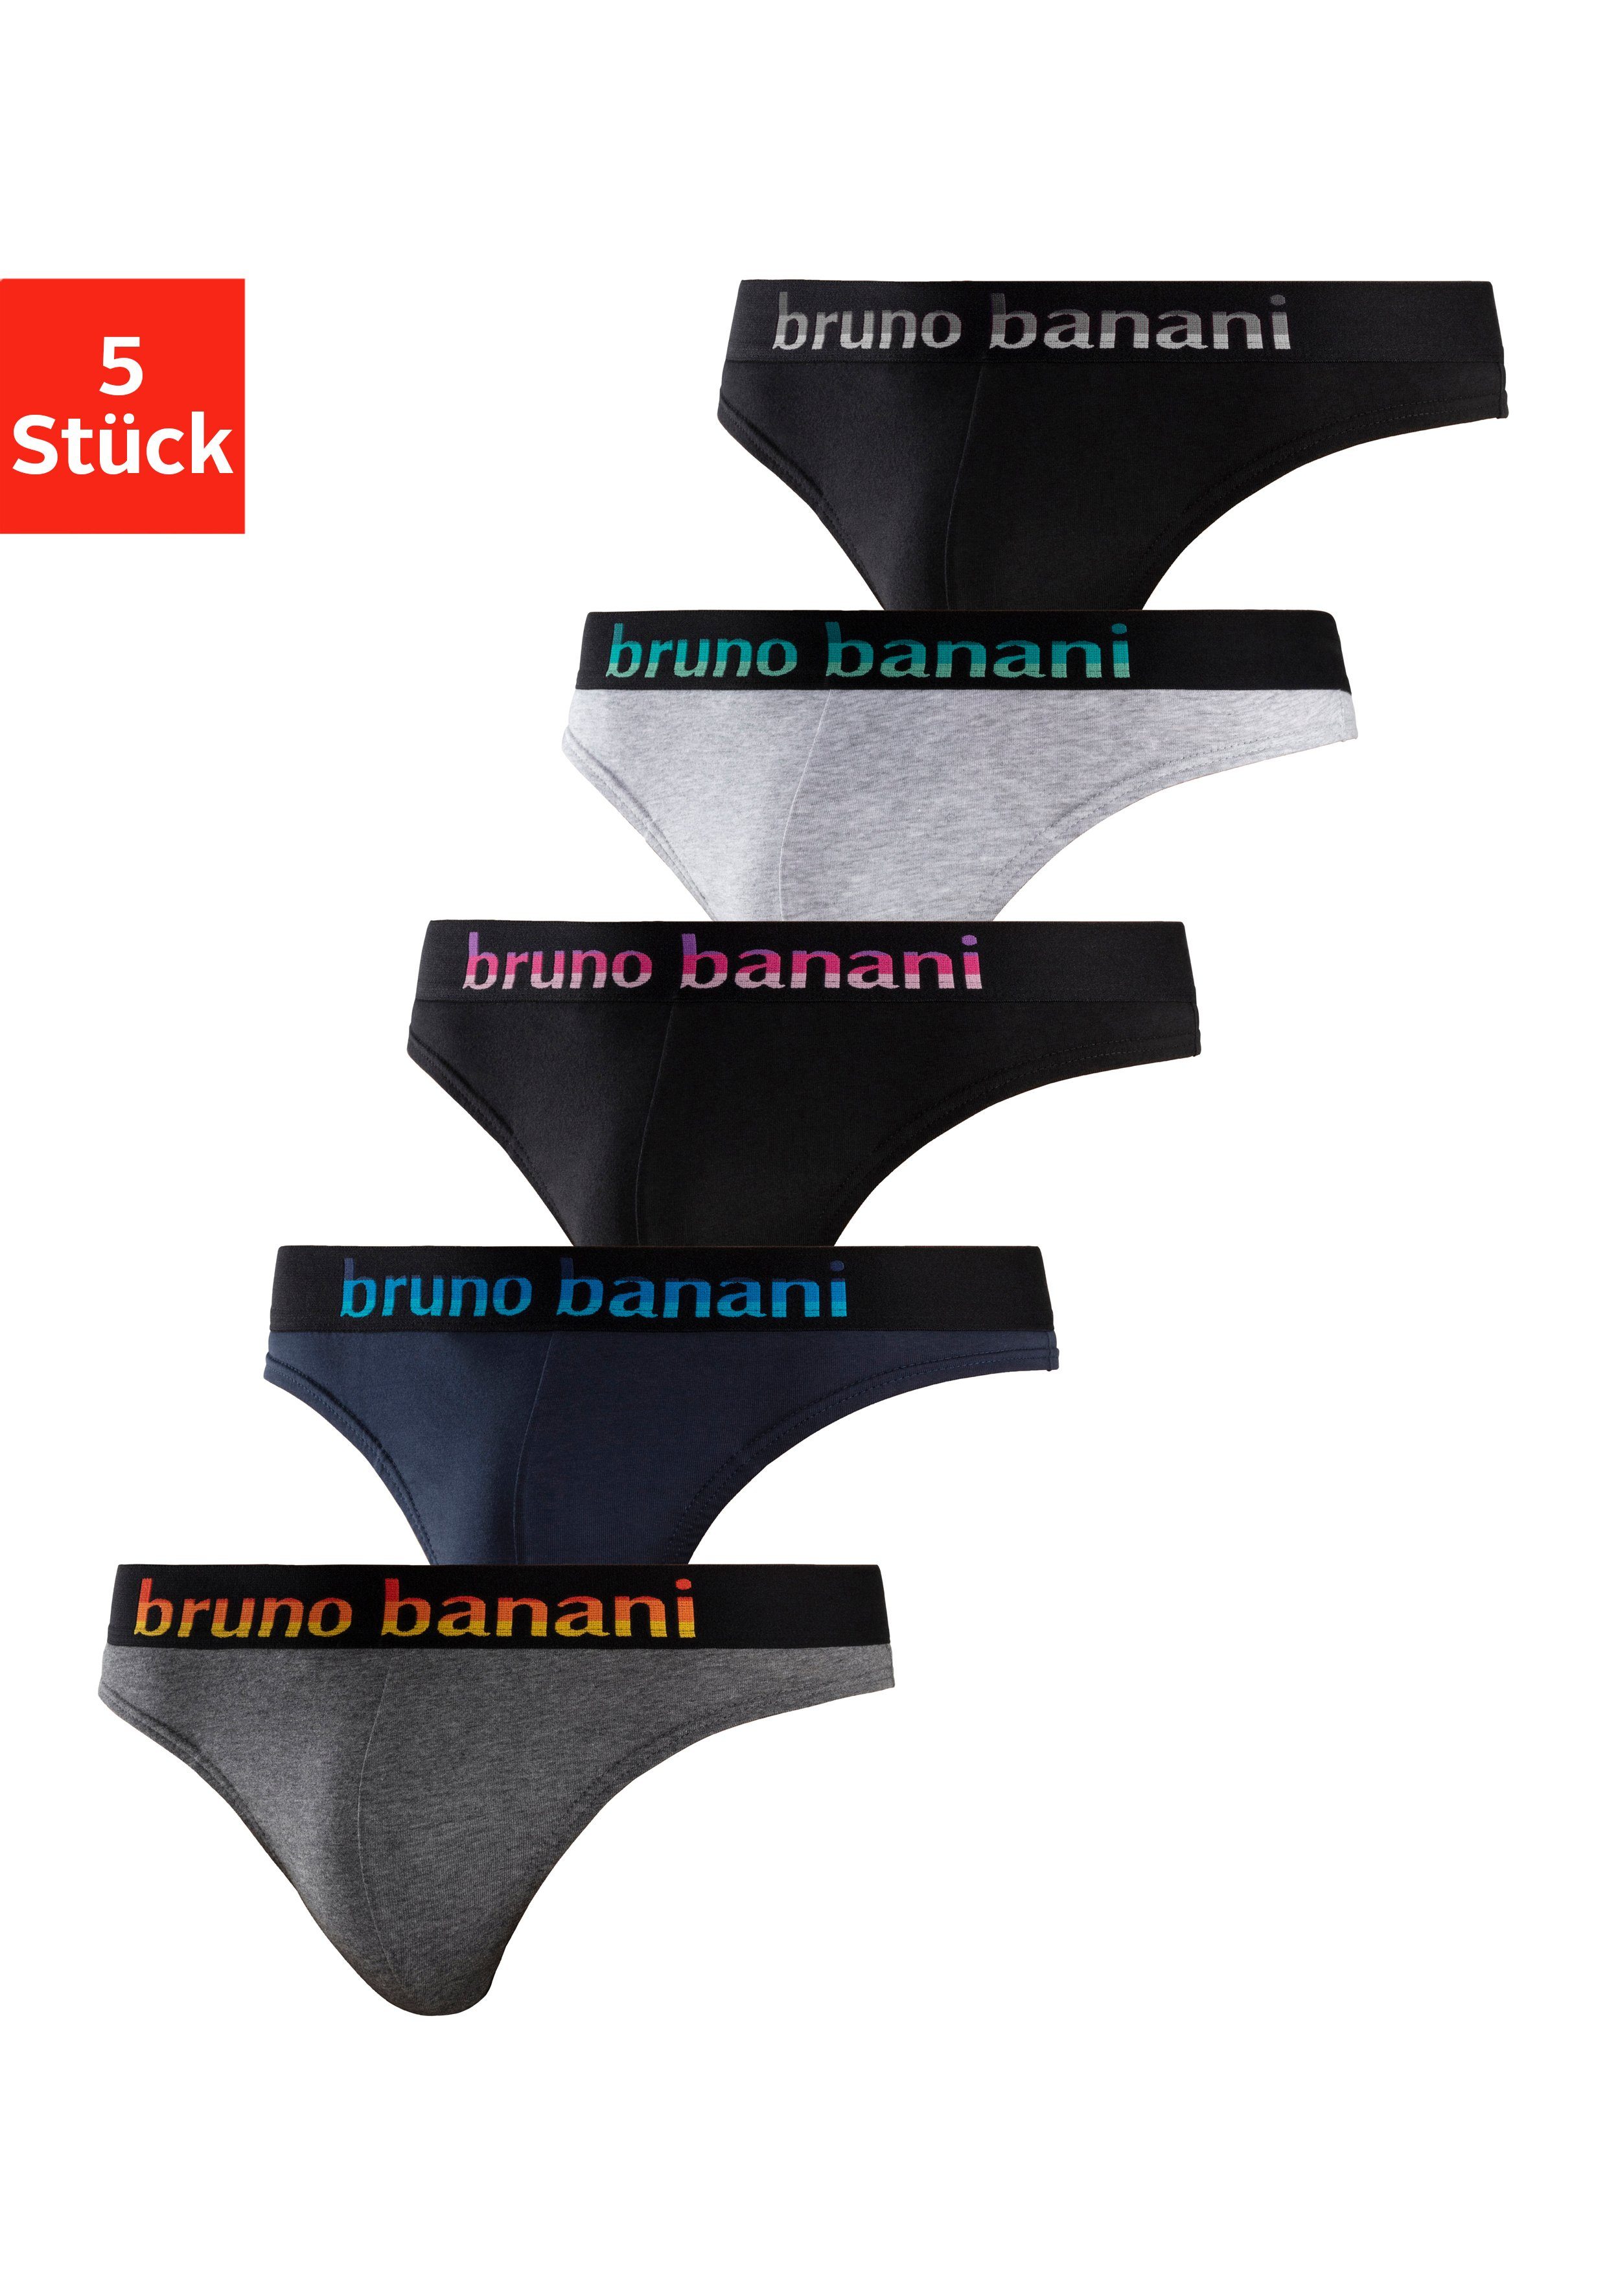 Bruno Banani String (5 Stück) mit Streifen Logo Webbund online kaufen | OTTO